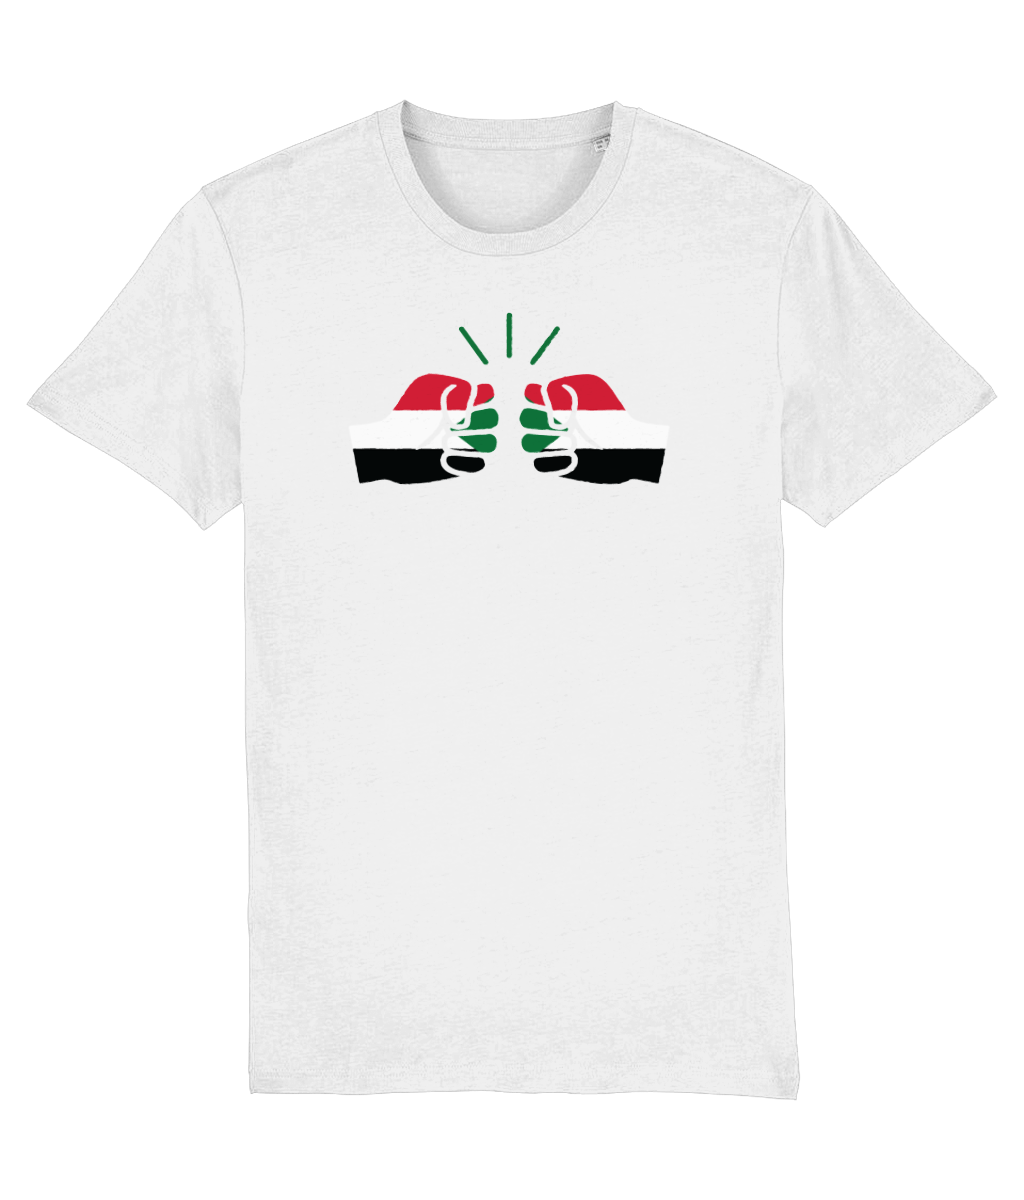 We Run Tings, Sudan, Organic Ring Spun Cotton T-Shirt